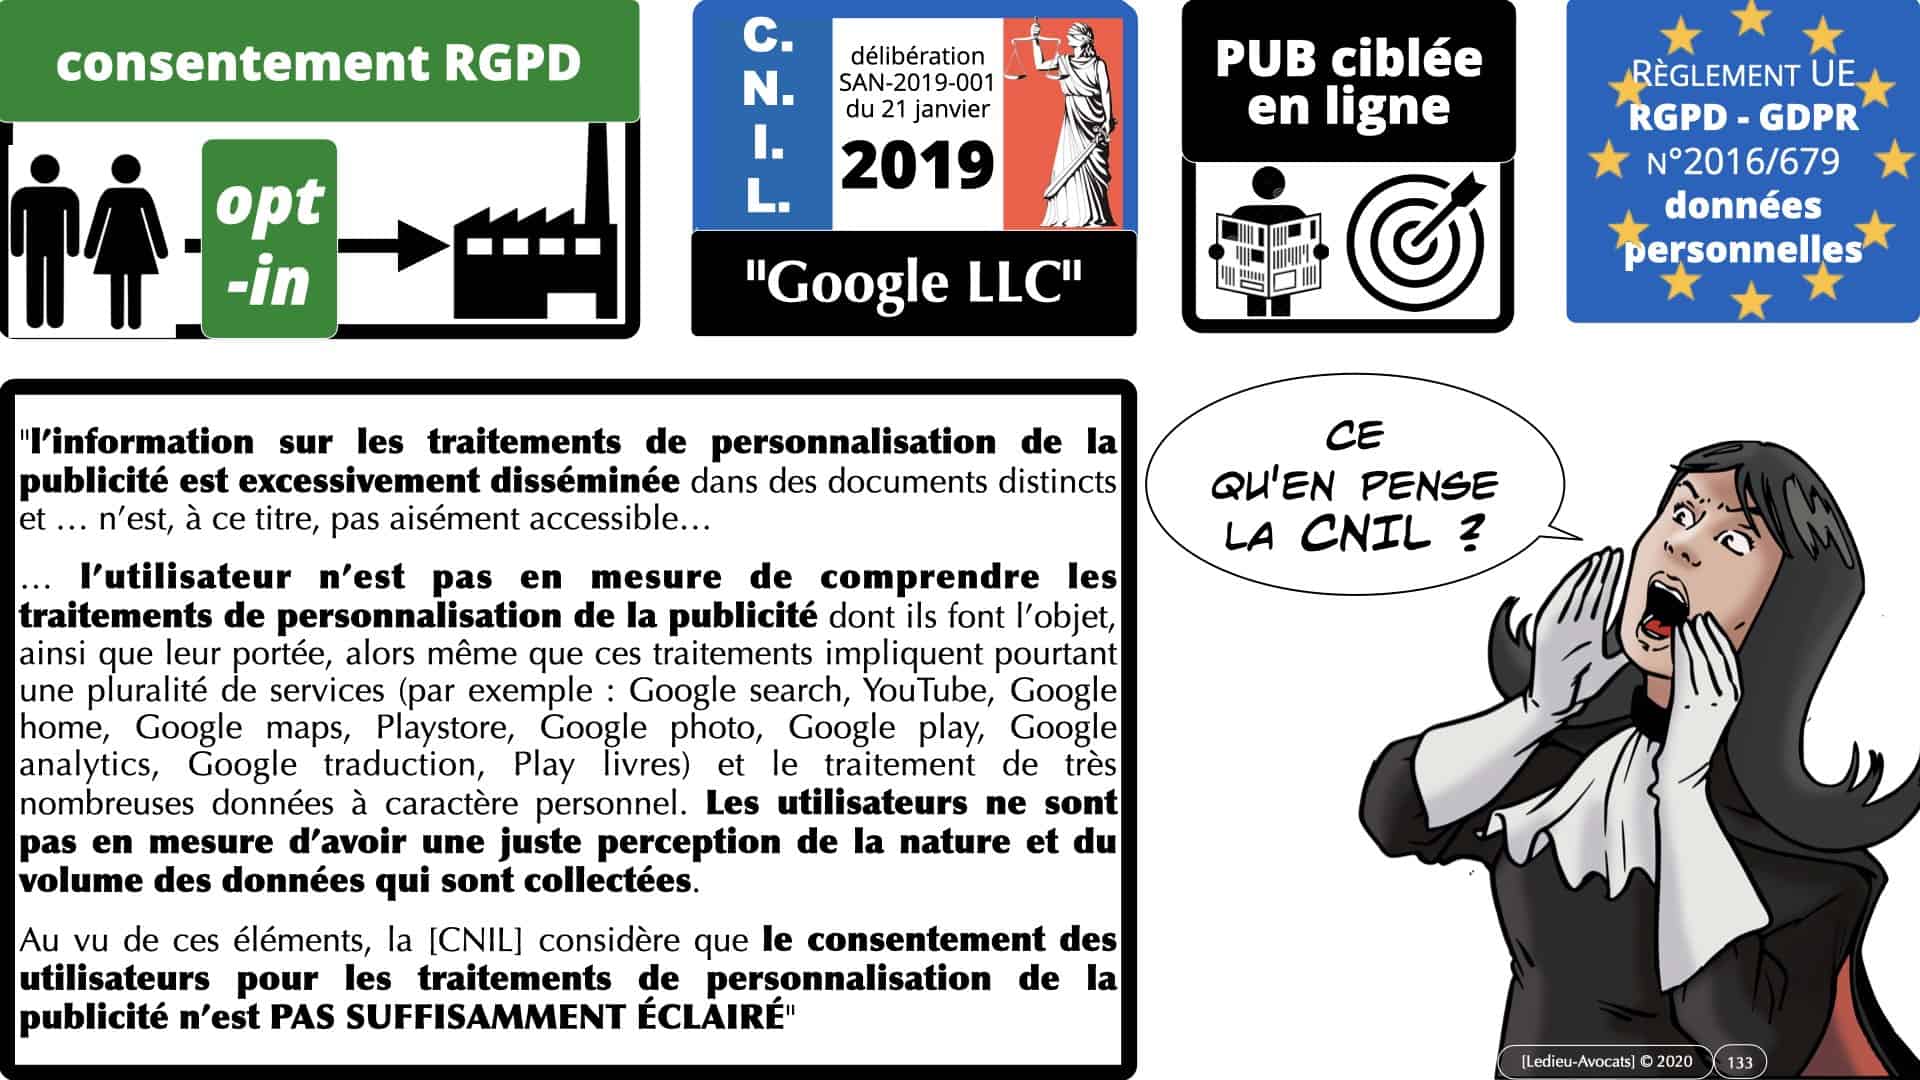 RGPD e-Privacy données personnelles jurisprudence formation Lamy Les Echos 10-02-2021 ©Ledieu-Avocats.133